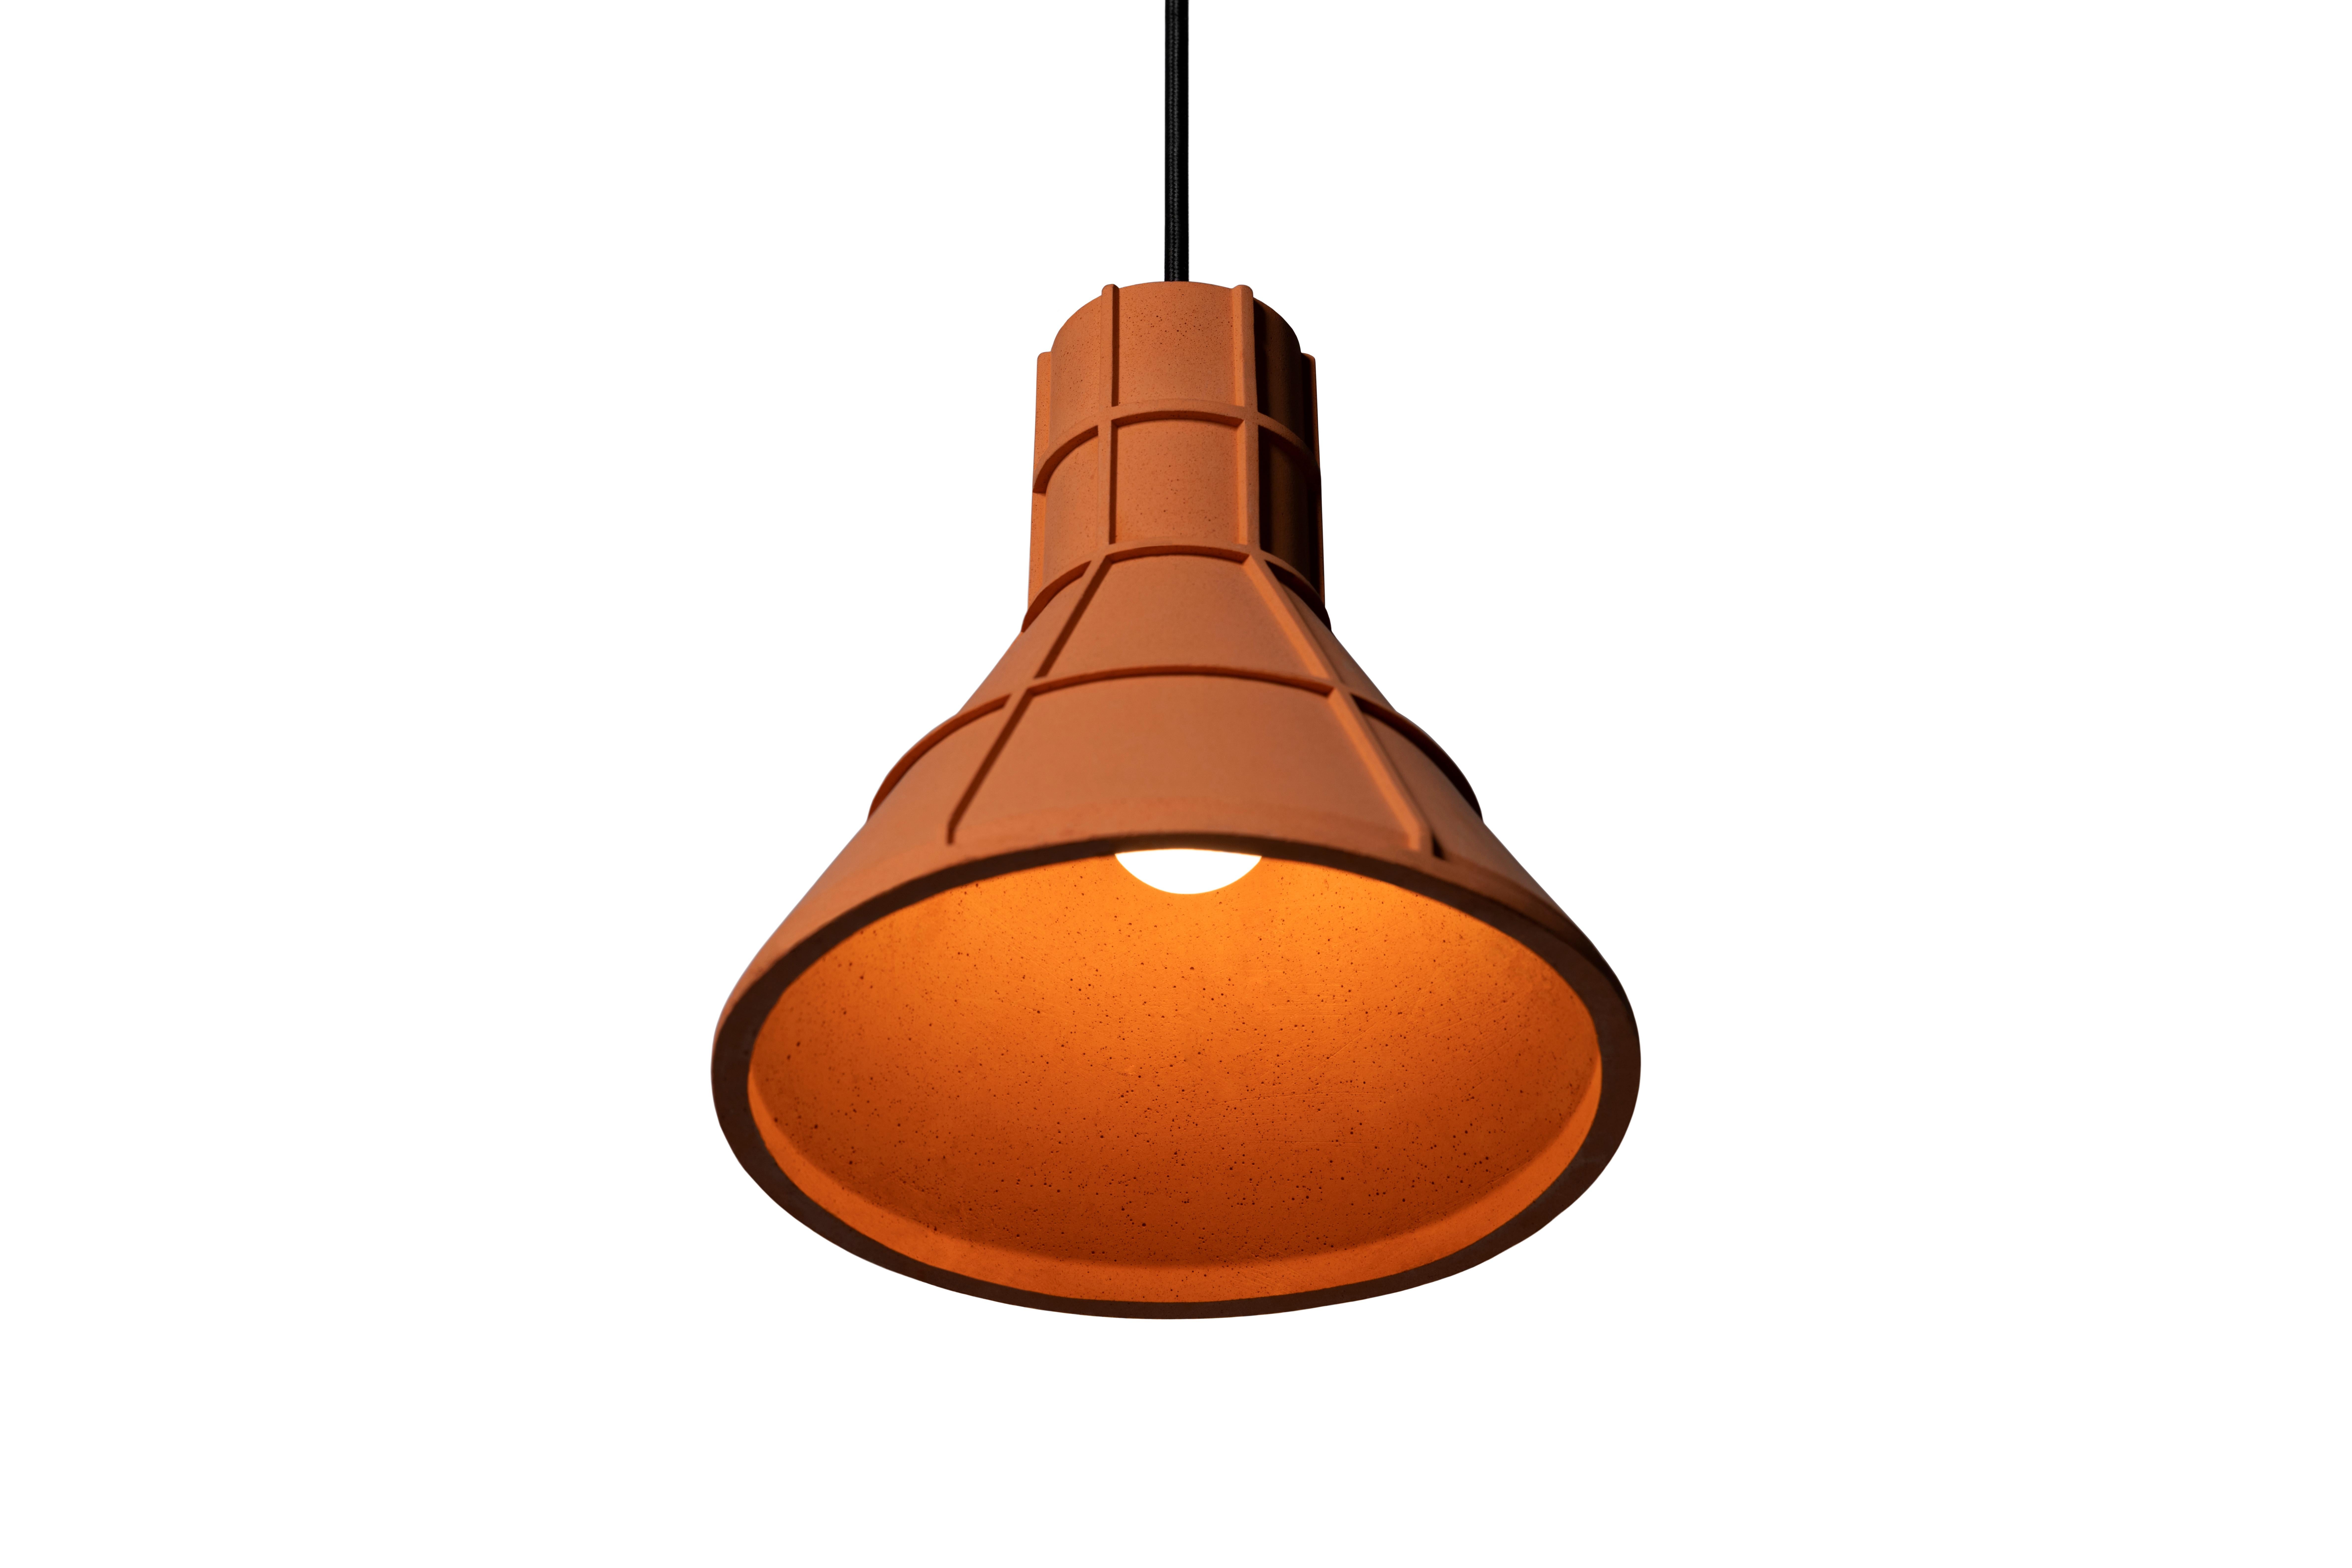 Lampe pendante 'U' de Nongzao x Bentu design.
Matériau : Terre cuite 
Couleur : orange terreux

Mesures : 21.1 cm de haut, 22,2 cm de diamètre
Fil : 3 mètres (noir)
Type de lampe : AC 100-240V 50-60Hz  9W - Comptable avec le système électrique